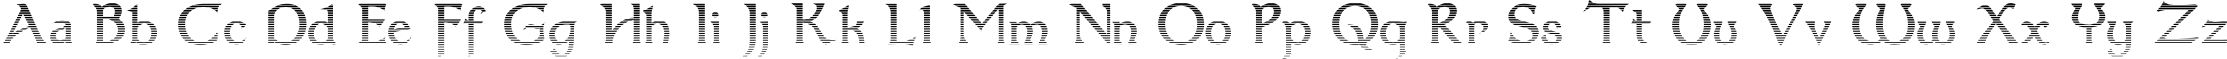 Пример написания английского алфавита шрифтом Dumbledor 3 Cut Up